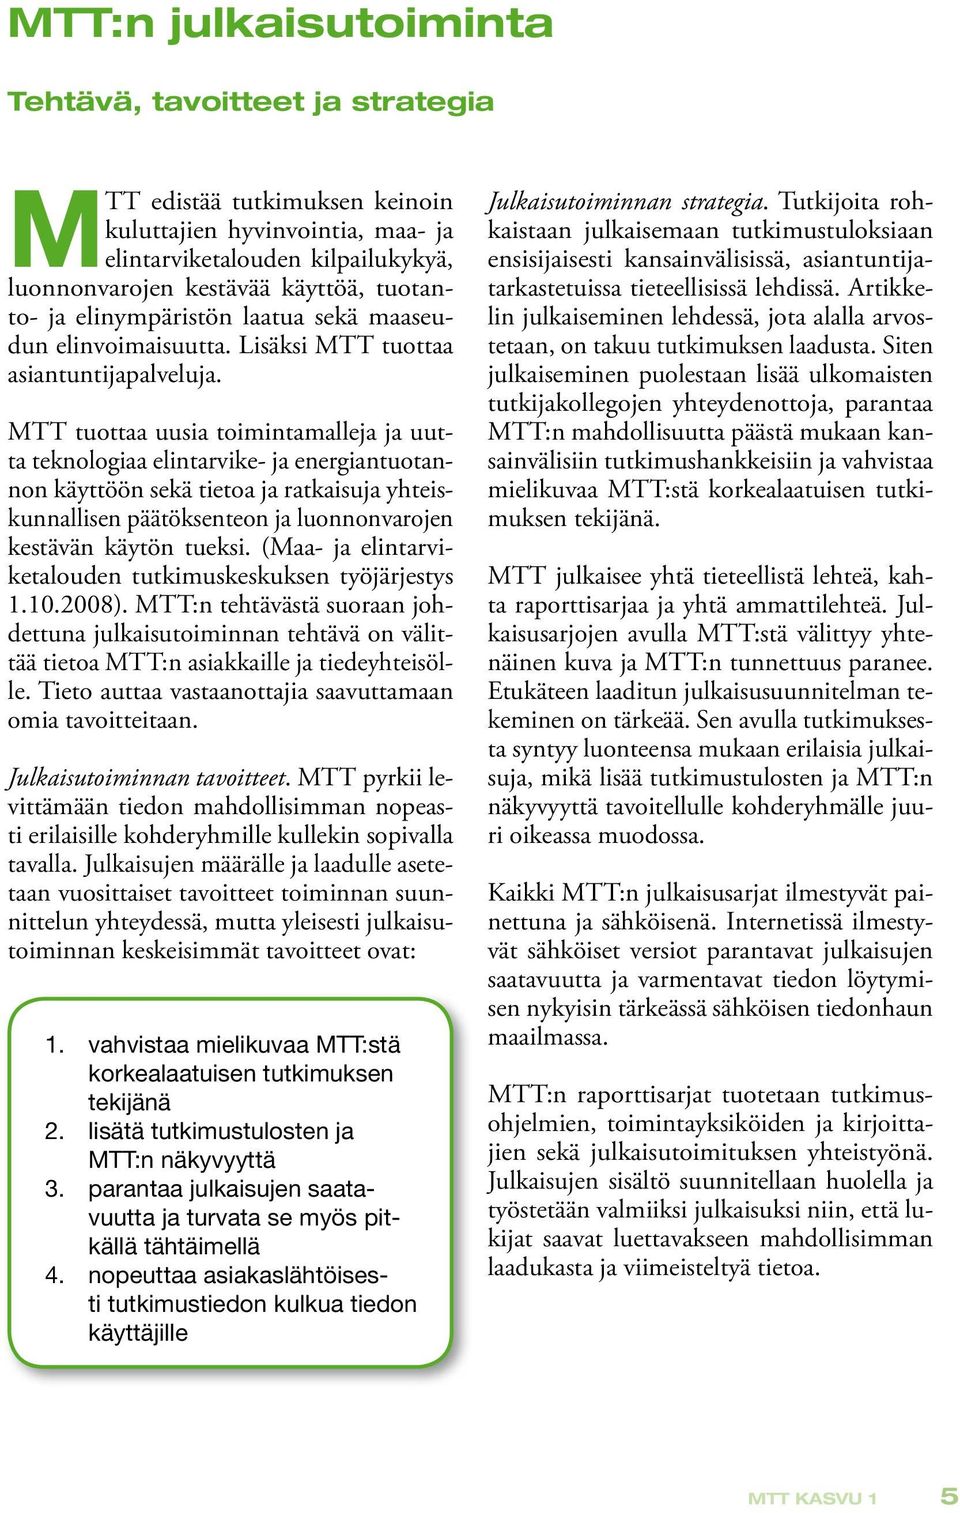 MTT tuottaa uusia toimintamalleja ja uutta teknologiaa elintarvike- ja energiantuotannon käyttöön sekä tietoa ja ratkaisuja yhteiskunnallisen päätöksenteon ja luonnonvarojen kestävän käytön tueksi.